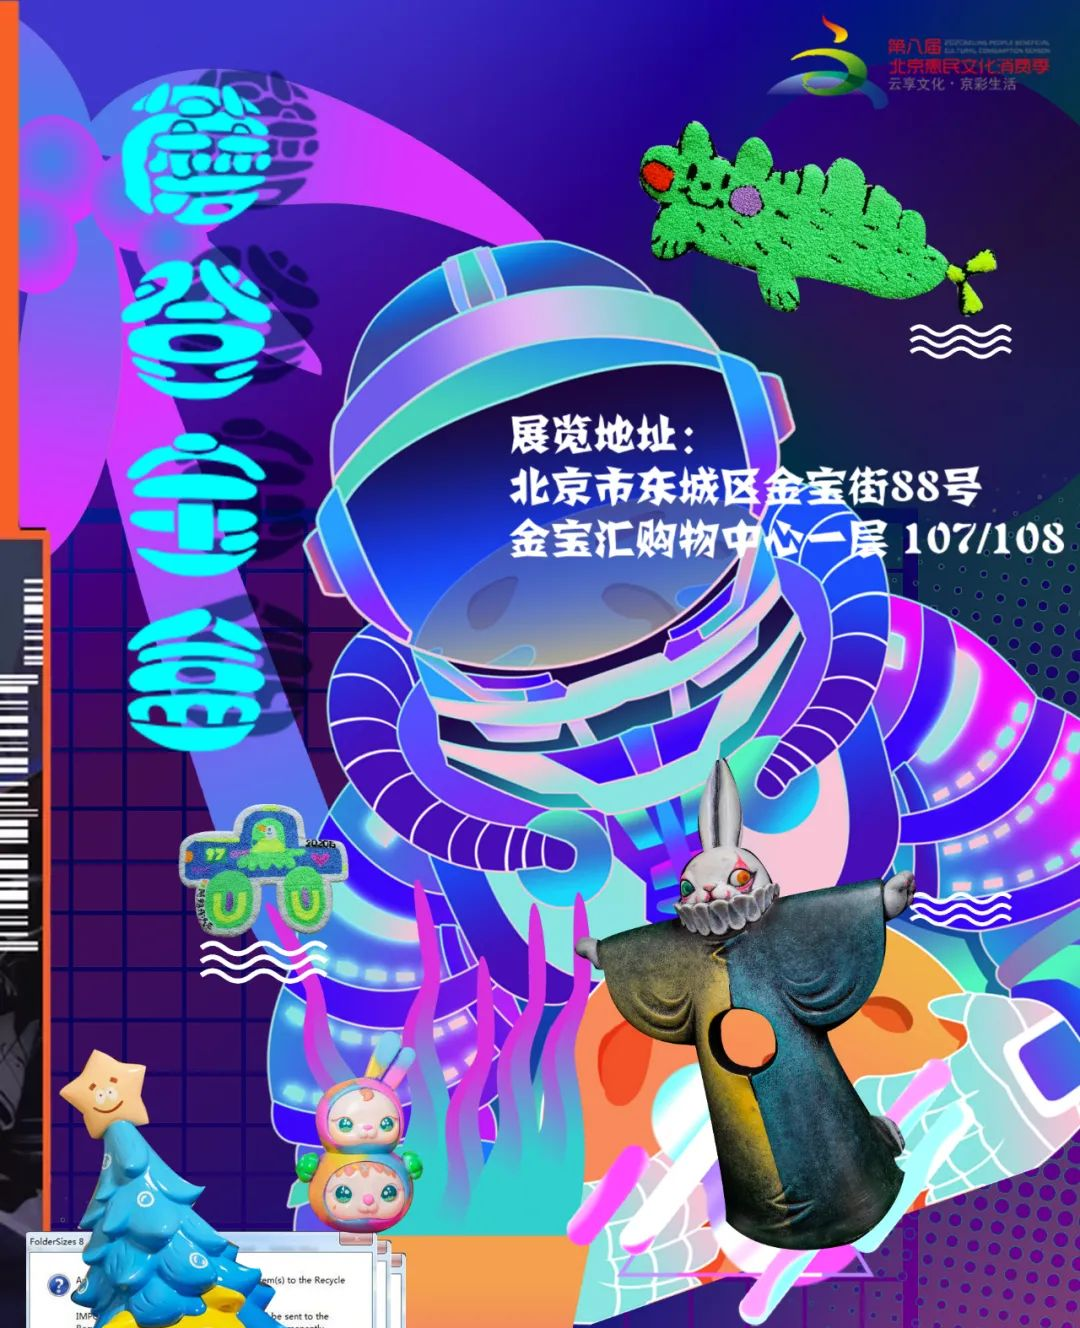 【值得一看的展览】2020年11月 北京展览信息